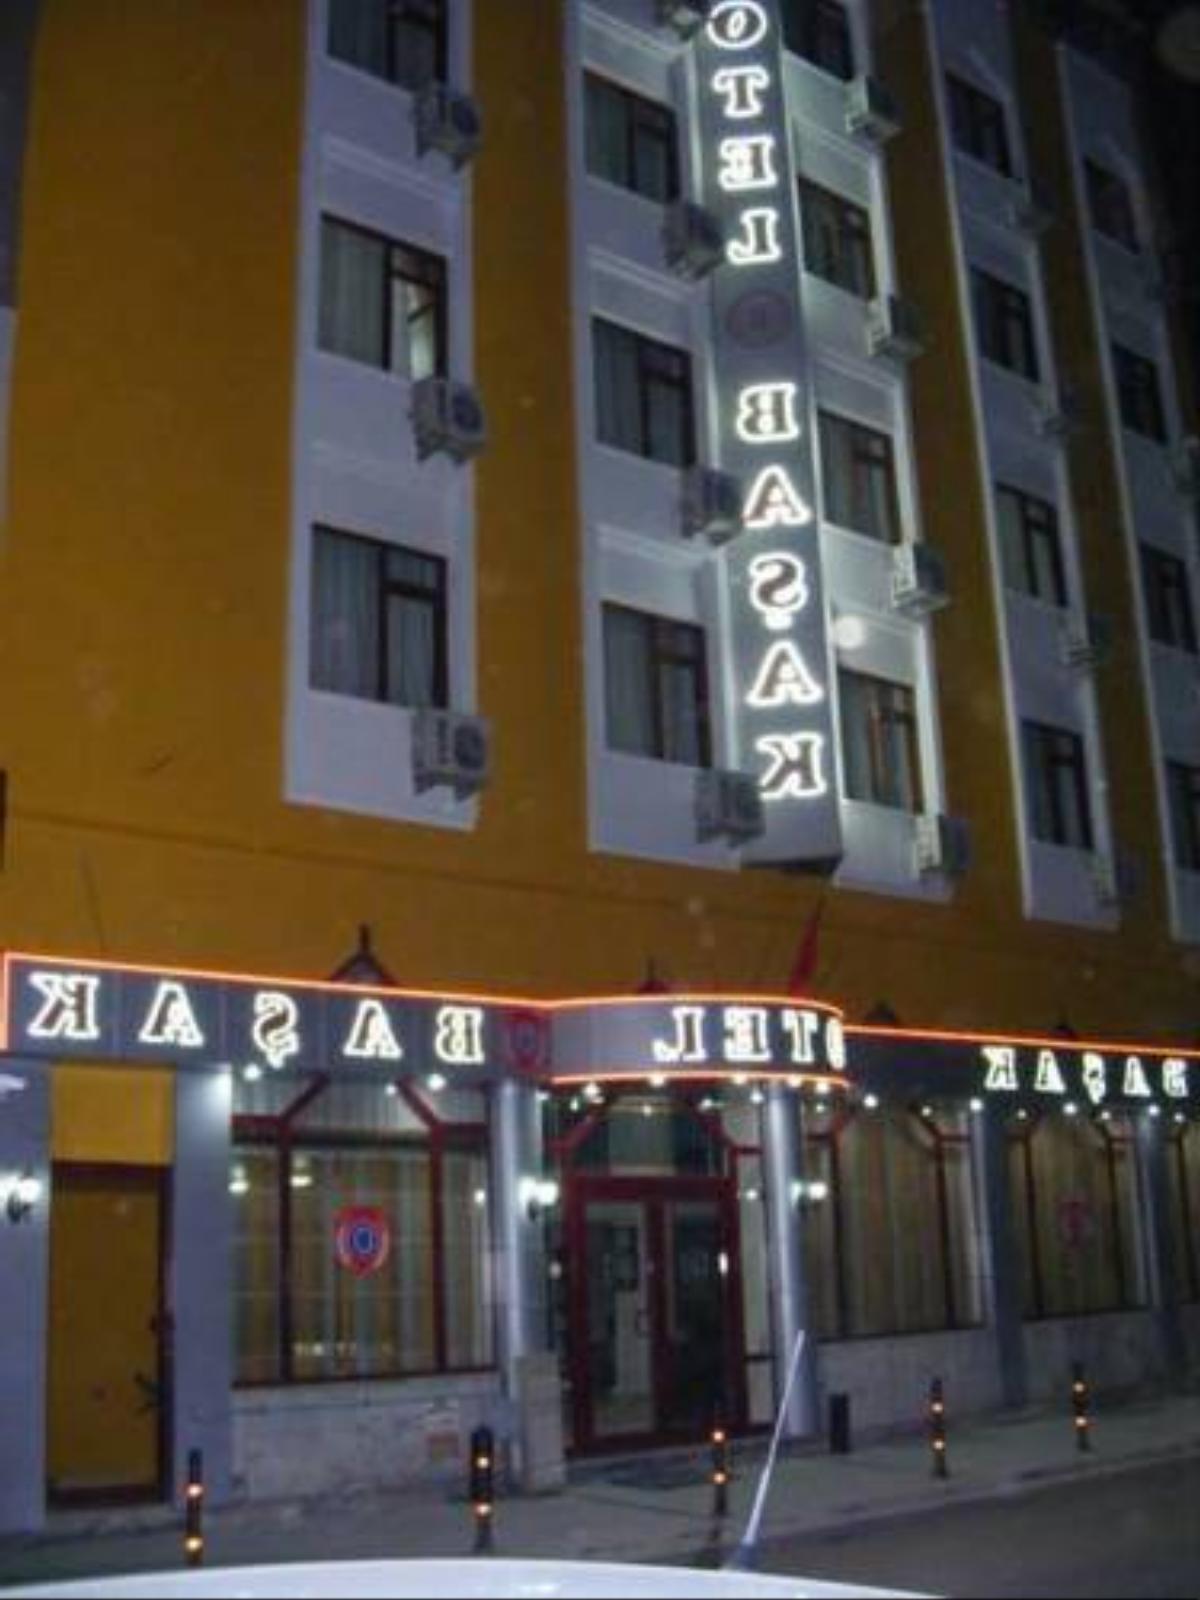 Basak Hotel Hotel Konya Turkey